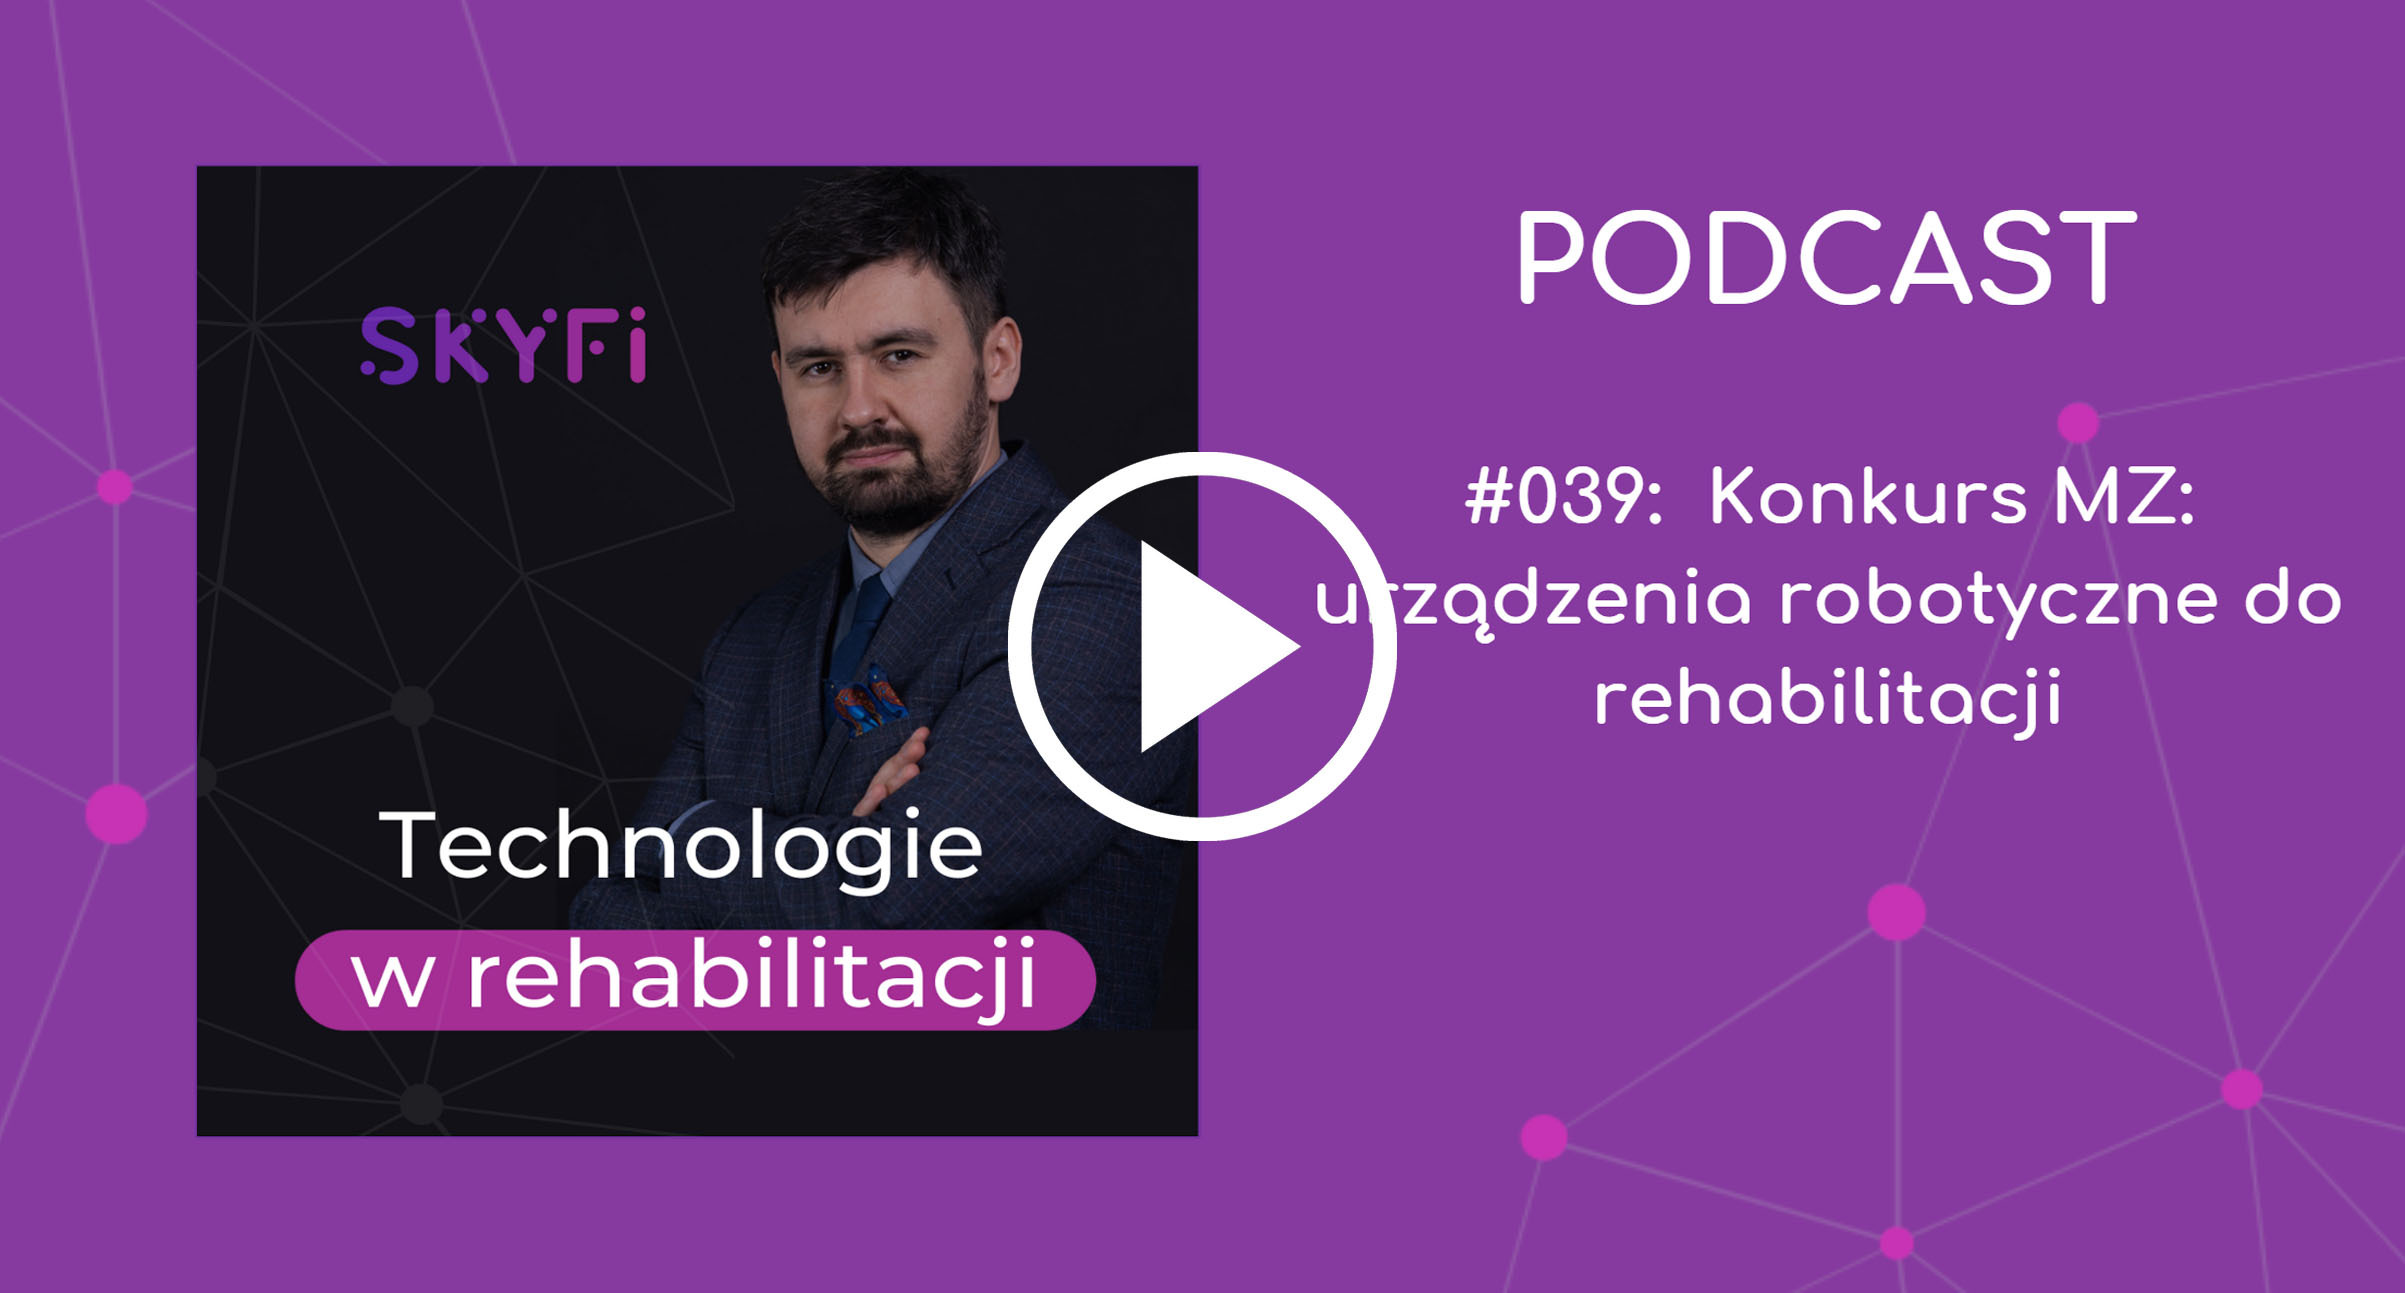 Podcast-39-konkurs-urządzenia-robotyczne-do-rehabilitacji-roboty-rehabilitacyjne-ministerstwo-zdrowia-robotyka-Skyfi